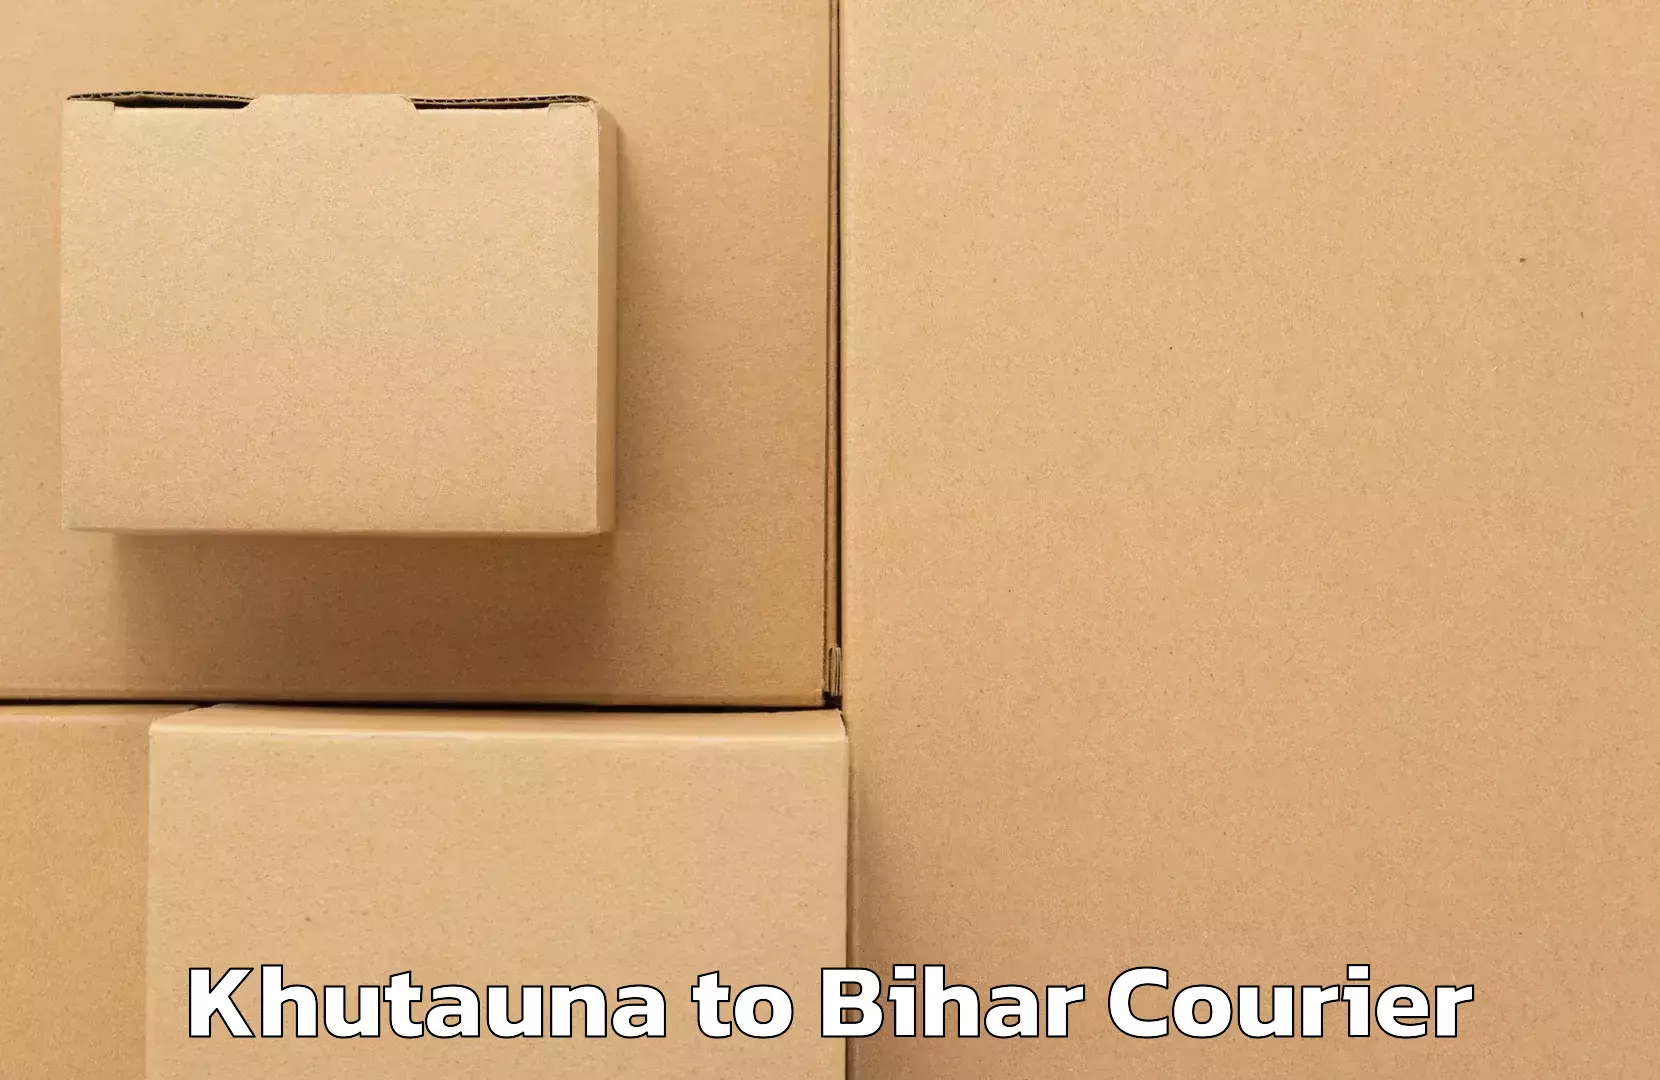 Advanced shipping technology Khutauna to Bihar